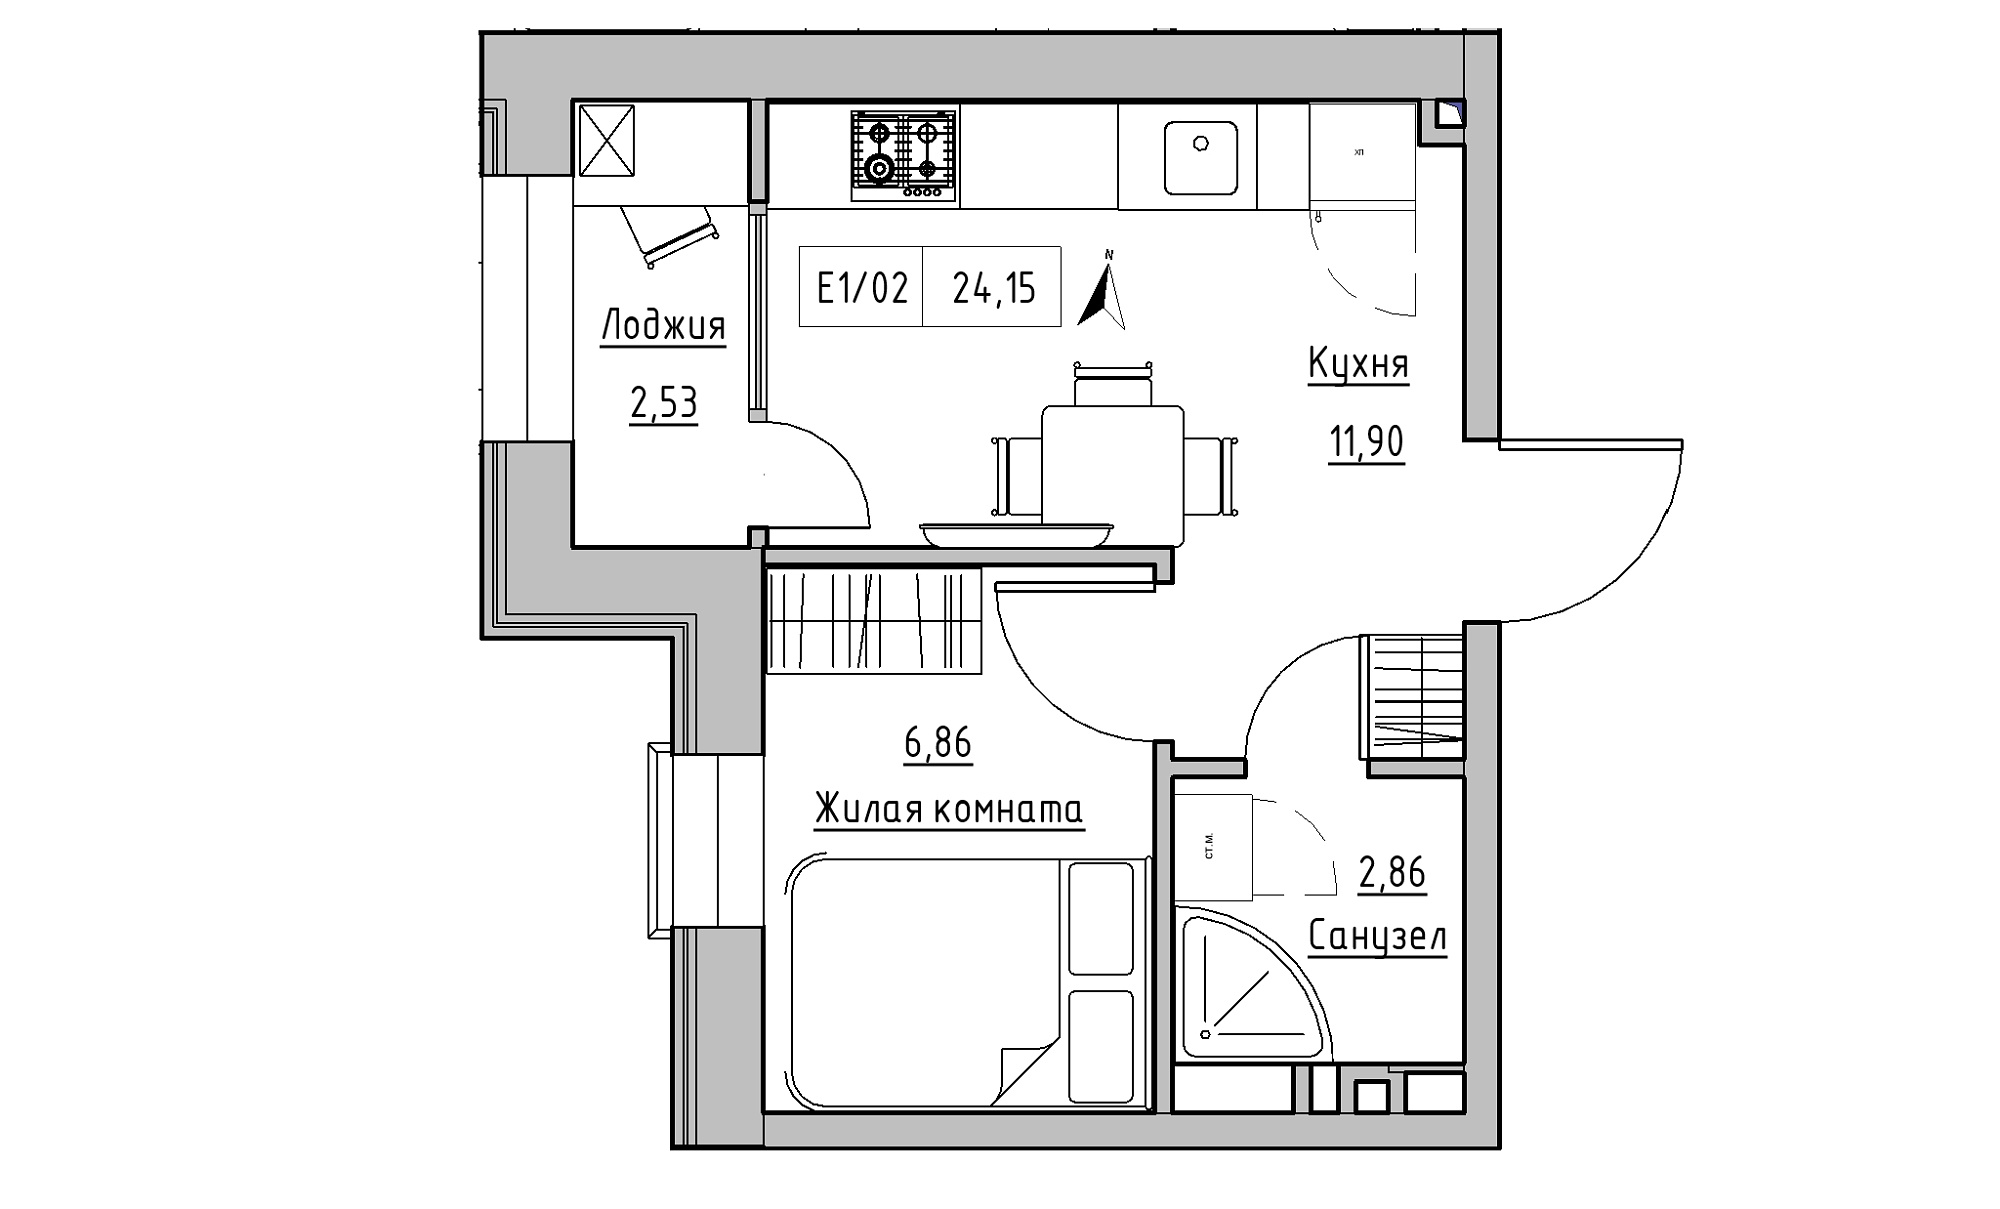 Планування 1-к квартира площею 24.15м2, KS-015-01/0001.